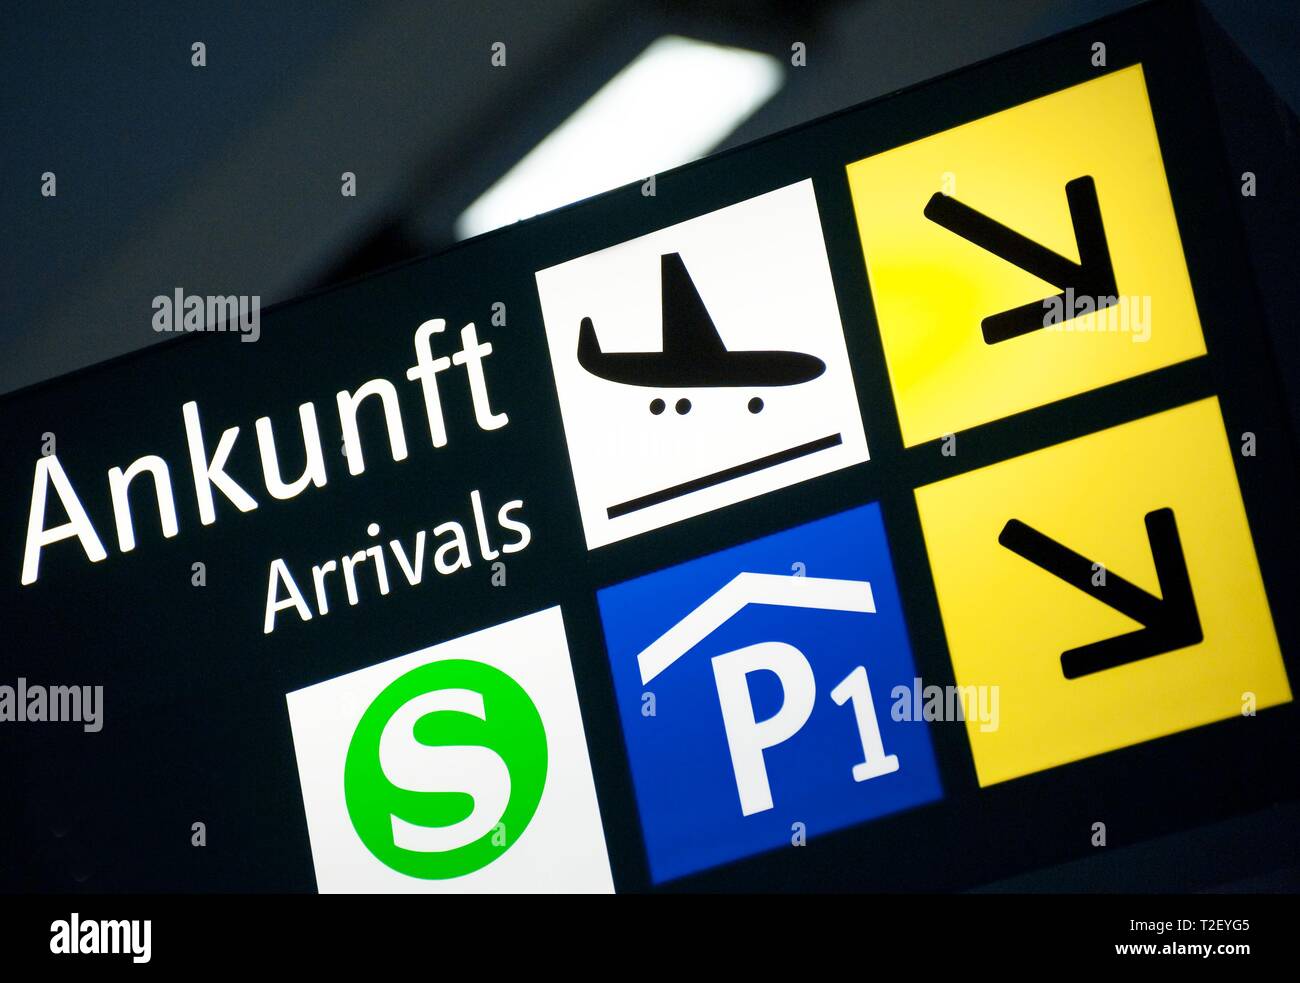 Llegada al aeropuerto firmar con símbolos para el tren, el estacionamiento y las flechas de dirección, Alemania Foto de stock